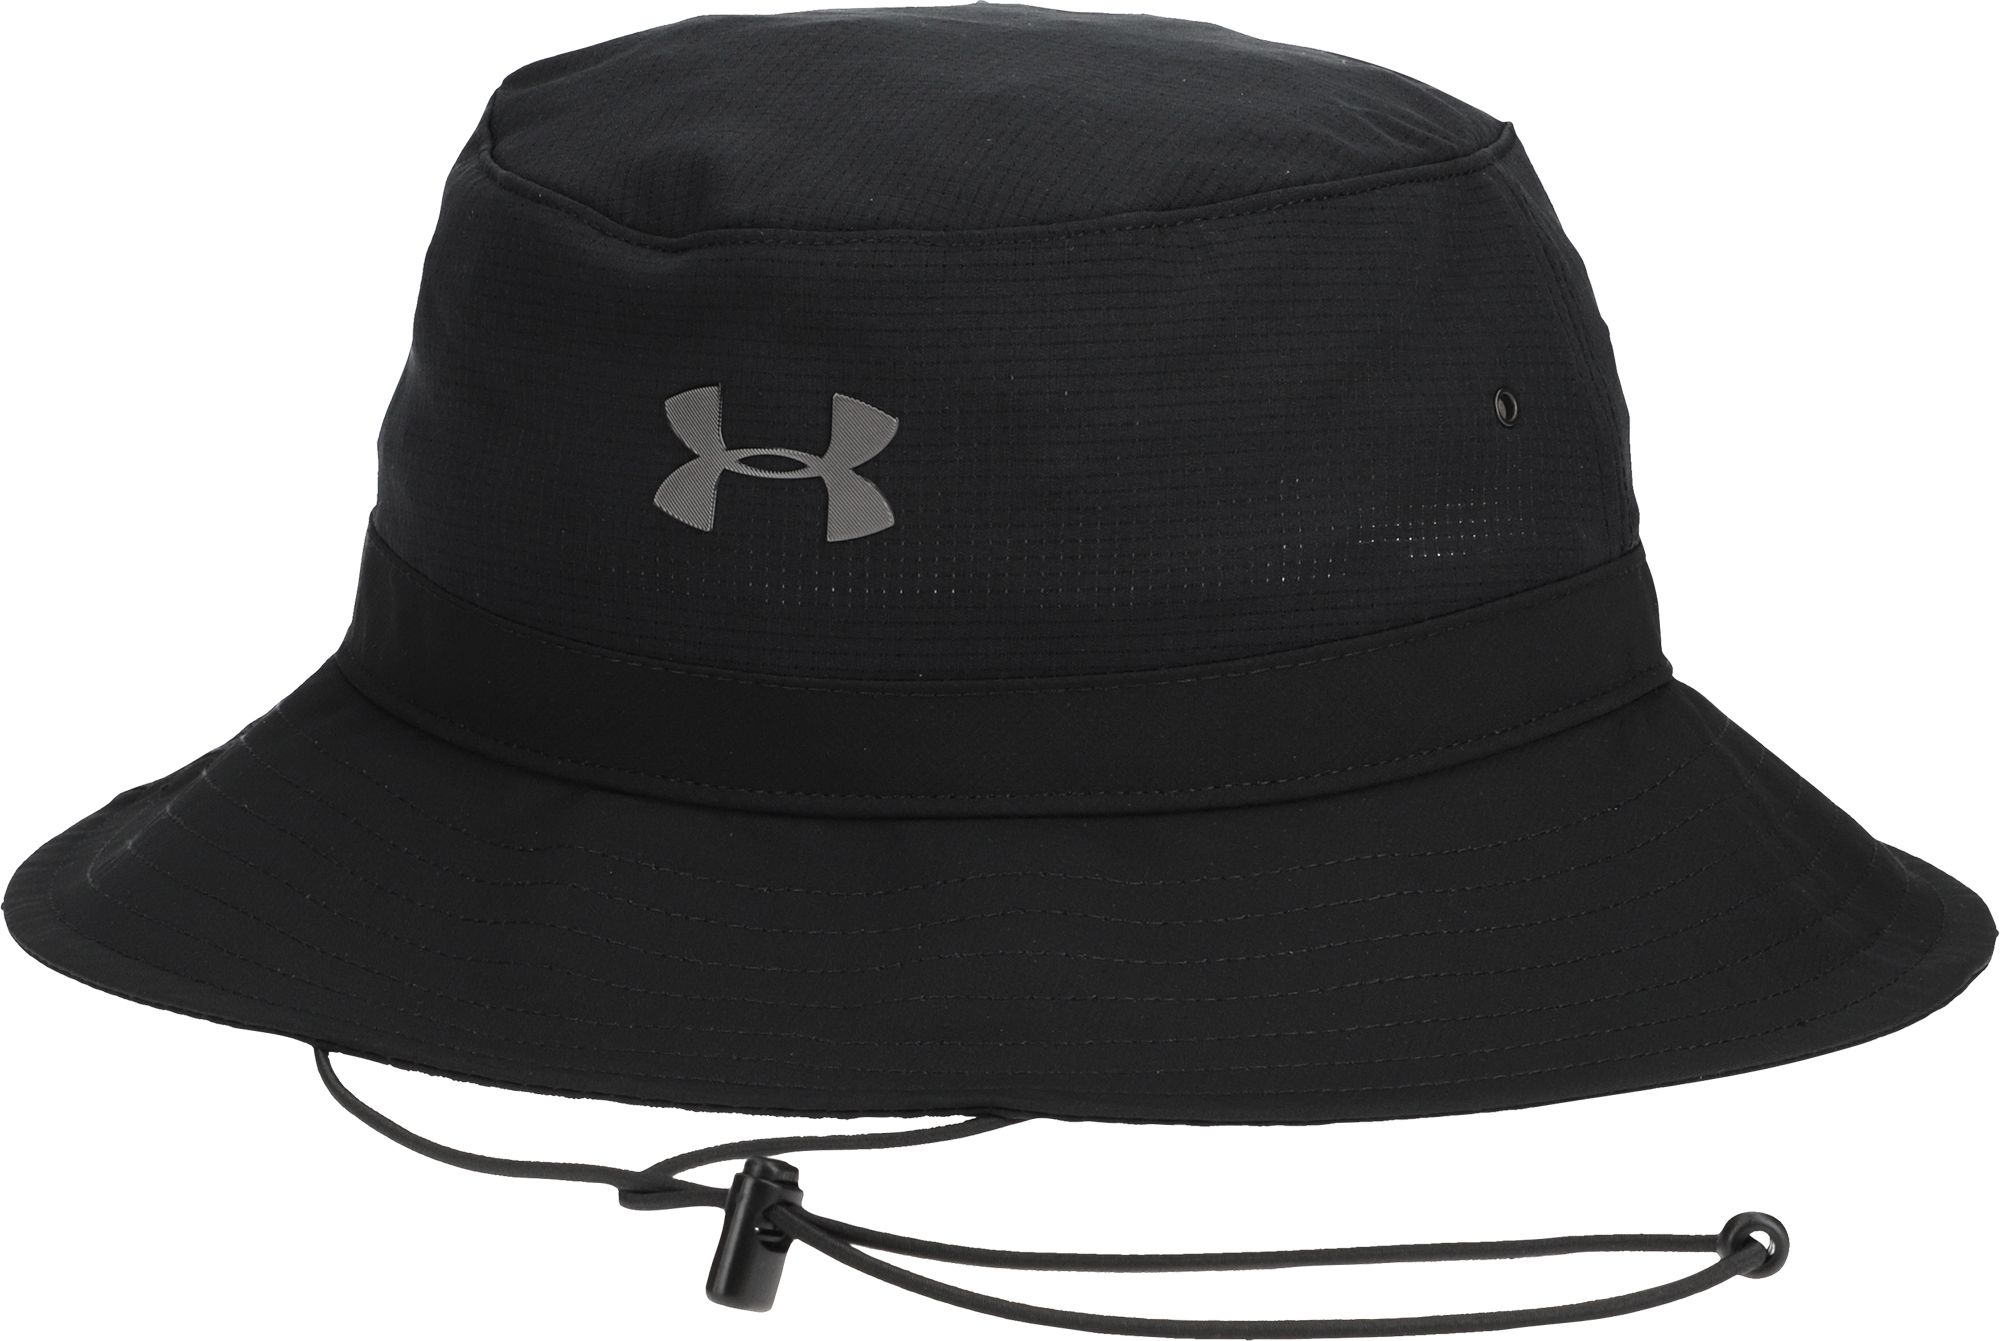 Airvent Warrior Bucket Hat 